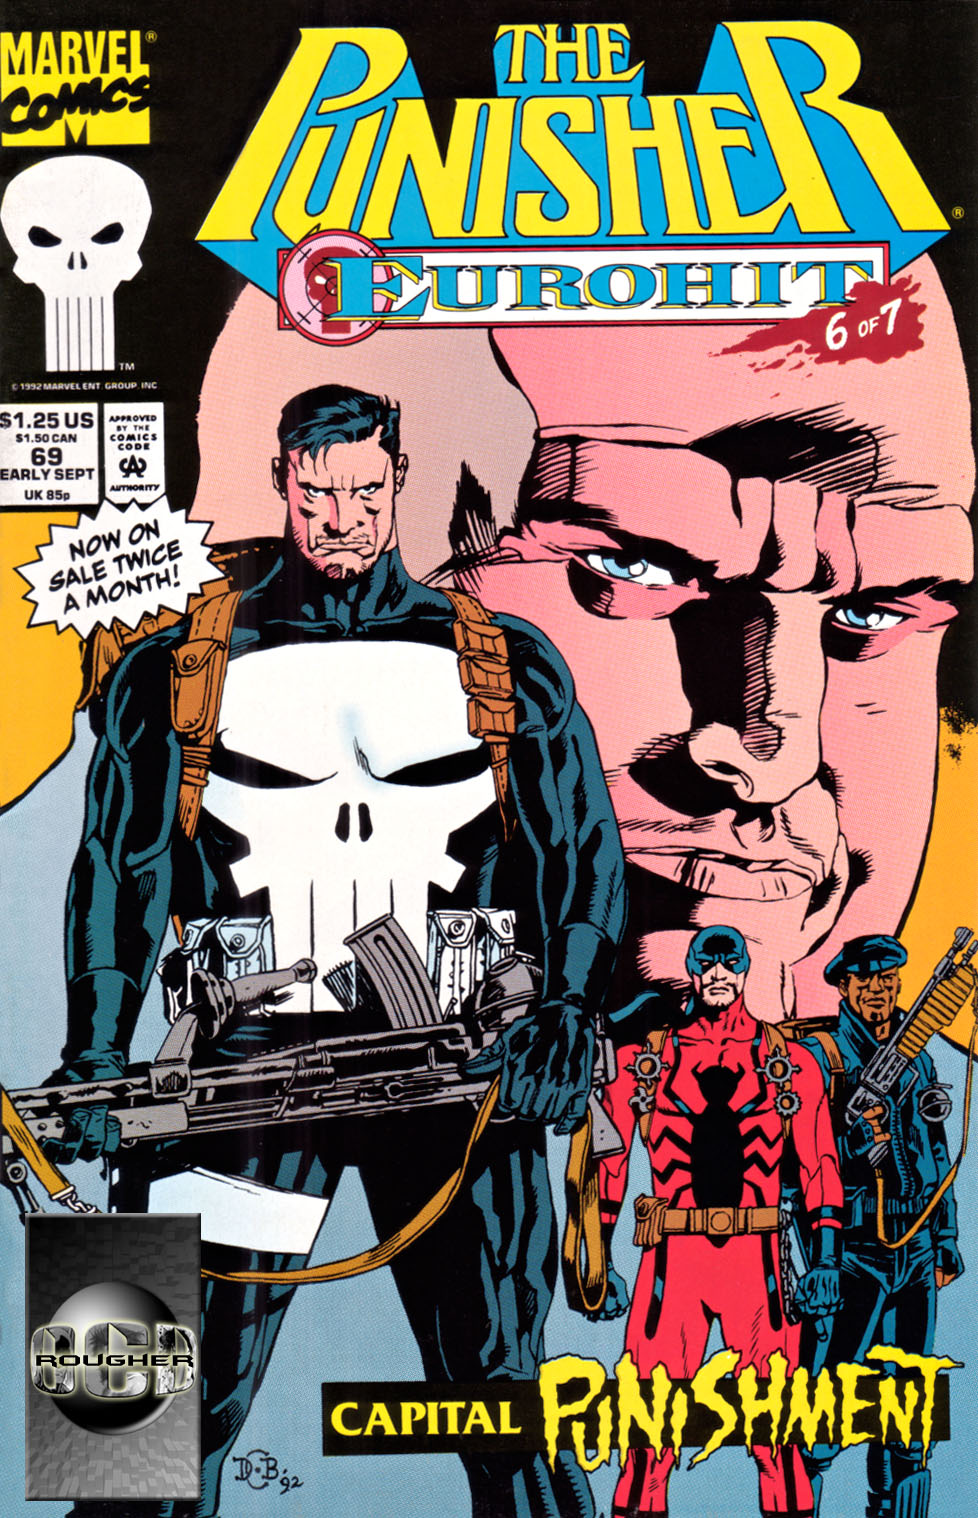 The Punisher (1987) Issue #69 - Eurohit #06 #76 - English 1